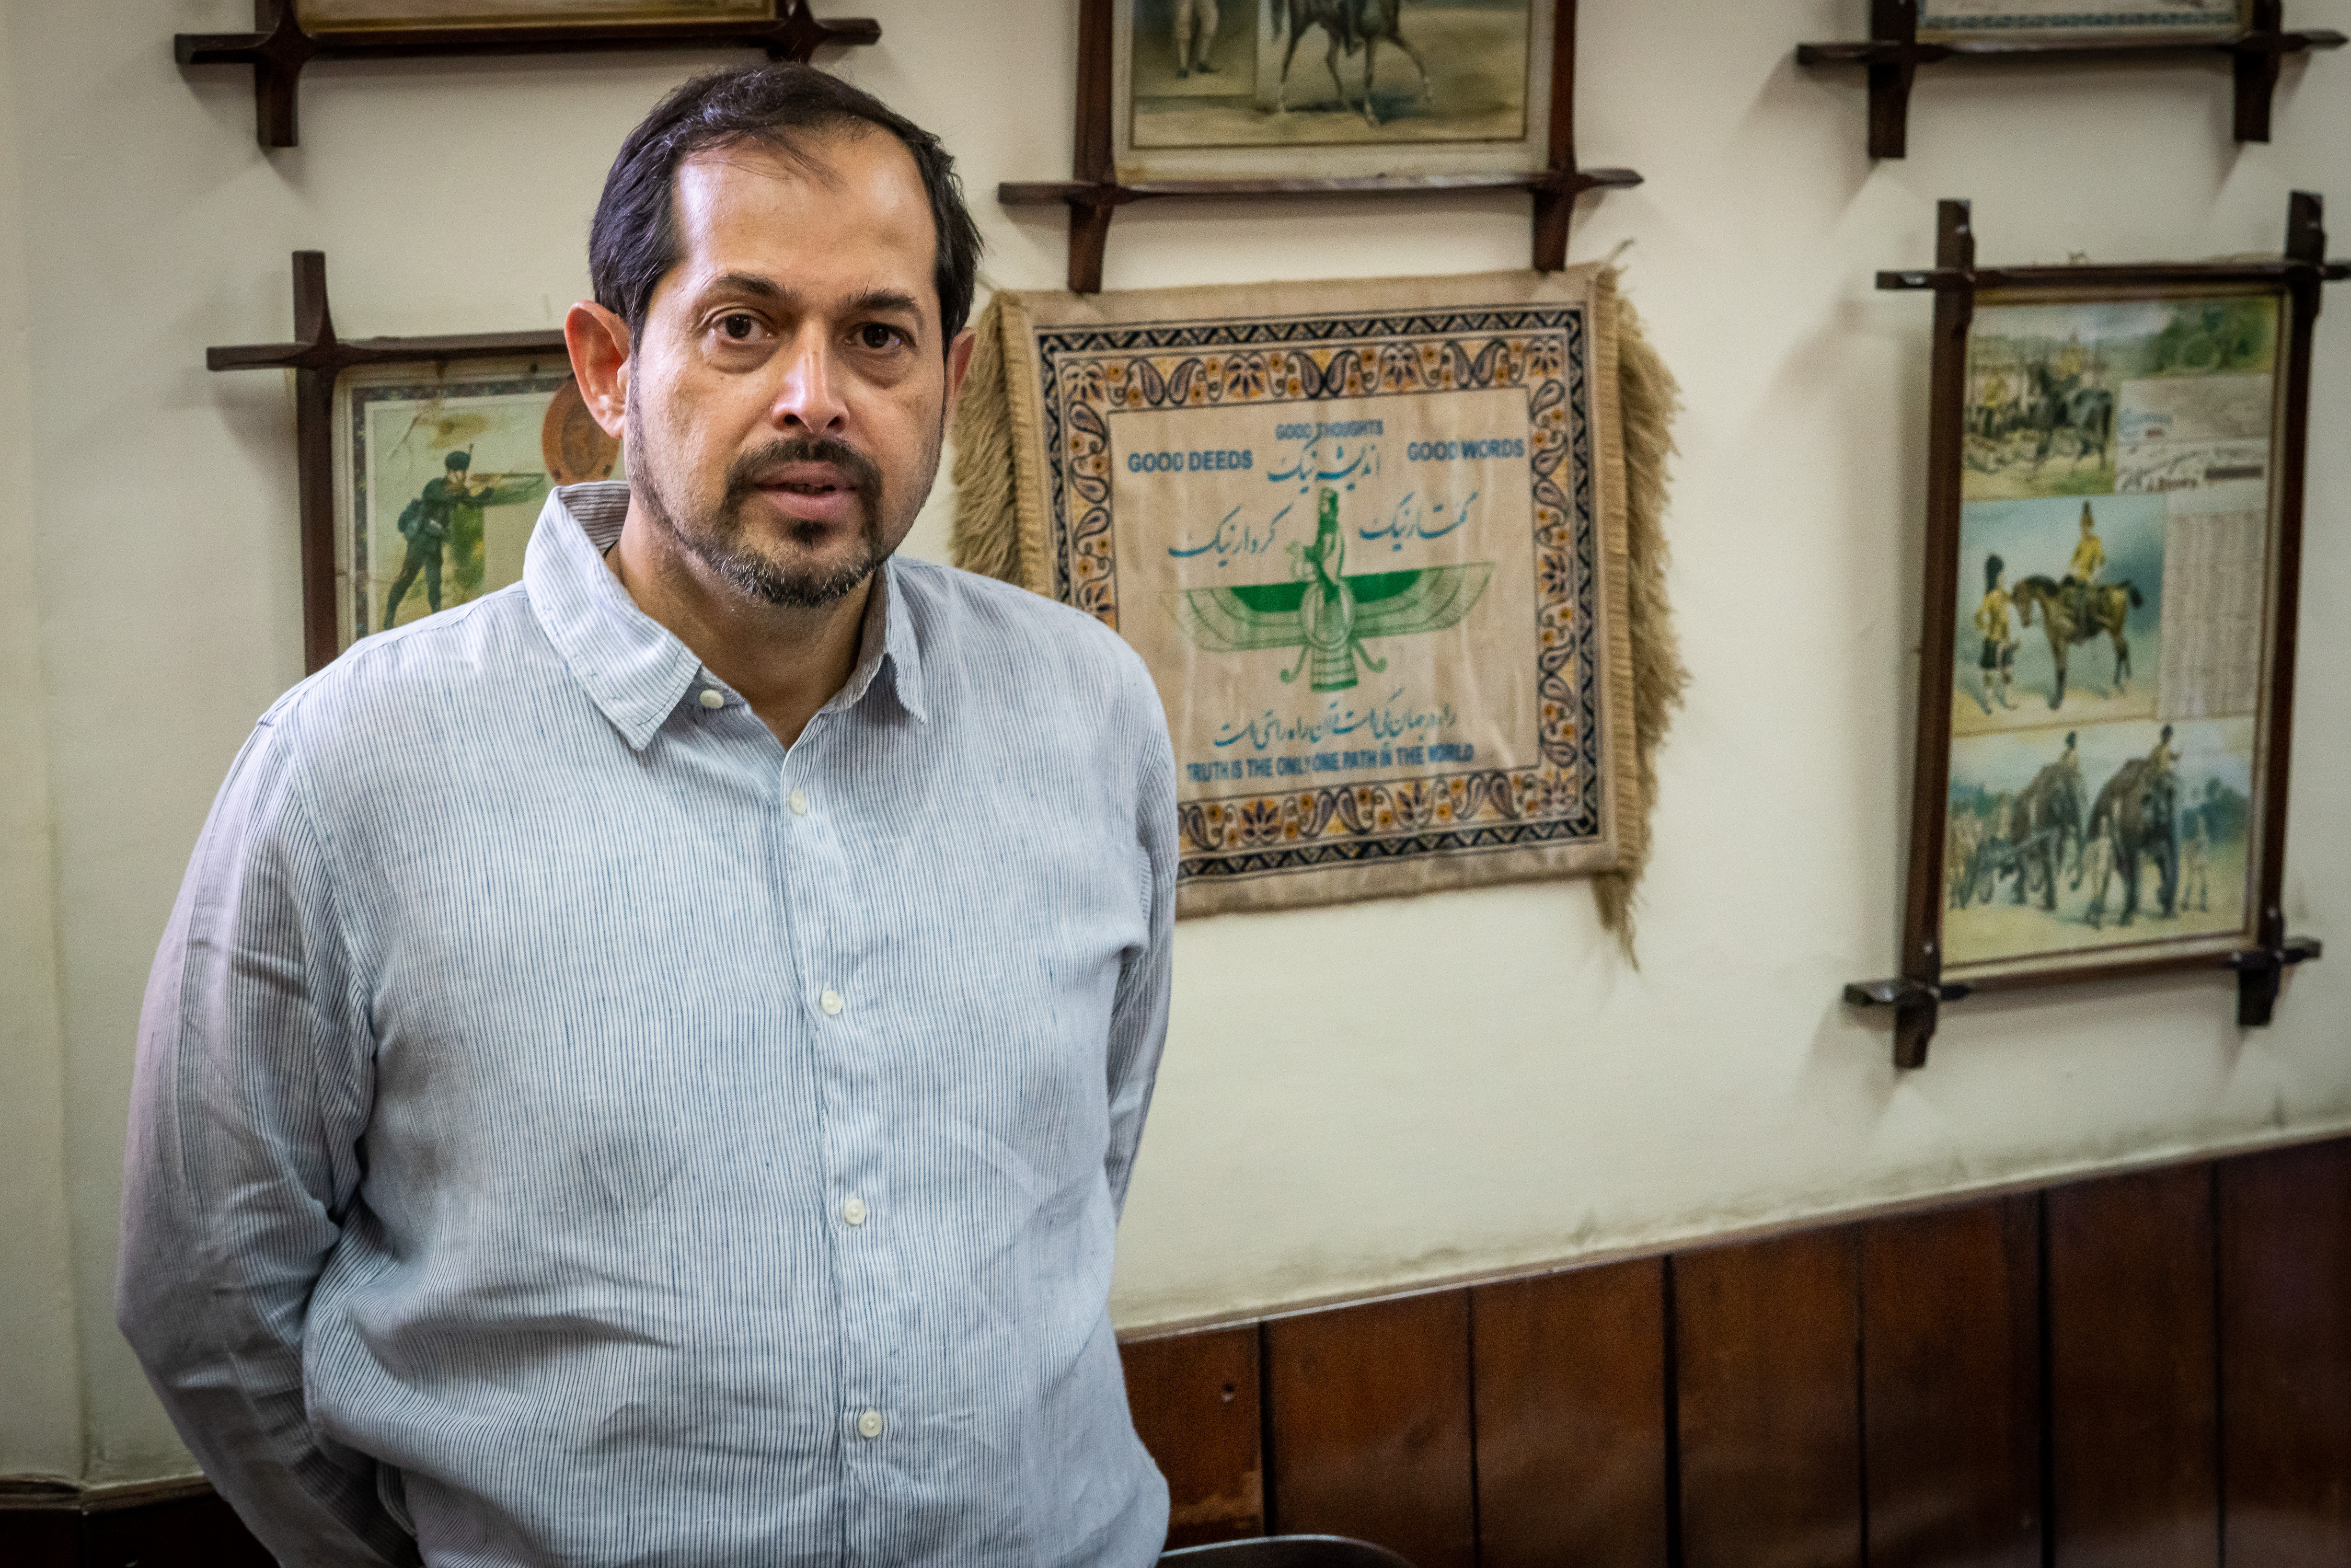 مدير مصنع بيرة مري، إسفنيار م. بهاندارا، ينتمي إلى أقلية البارسيين غير المسلمة في باكستان.  Foto: Philipp Breu